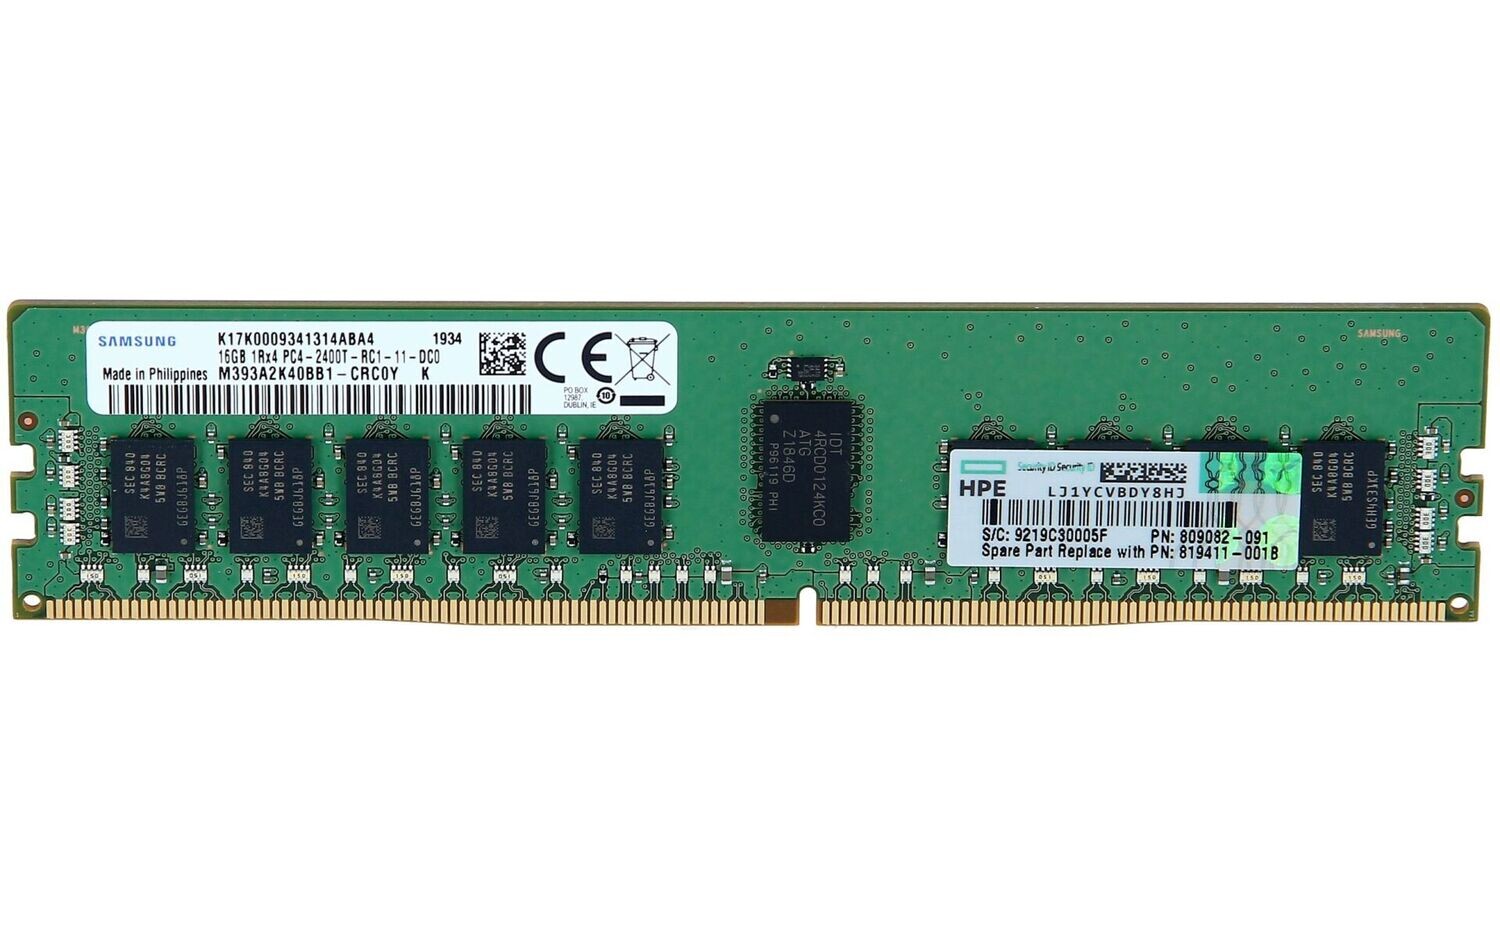 HPE Memory 16GB 1Rx4 PC4-2400T-R Kit
** NUEVO SELLADO **